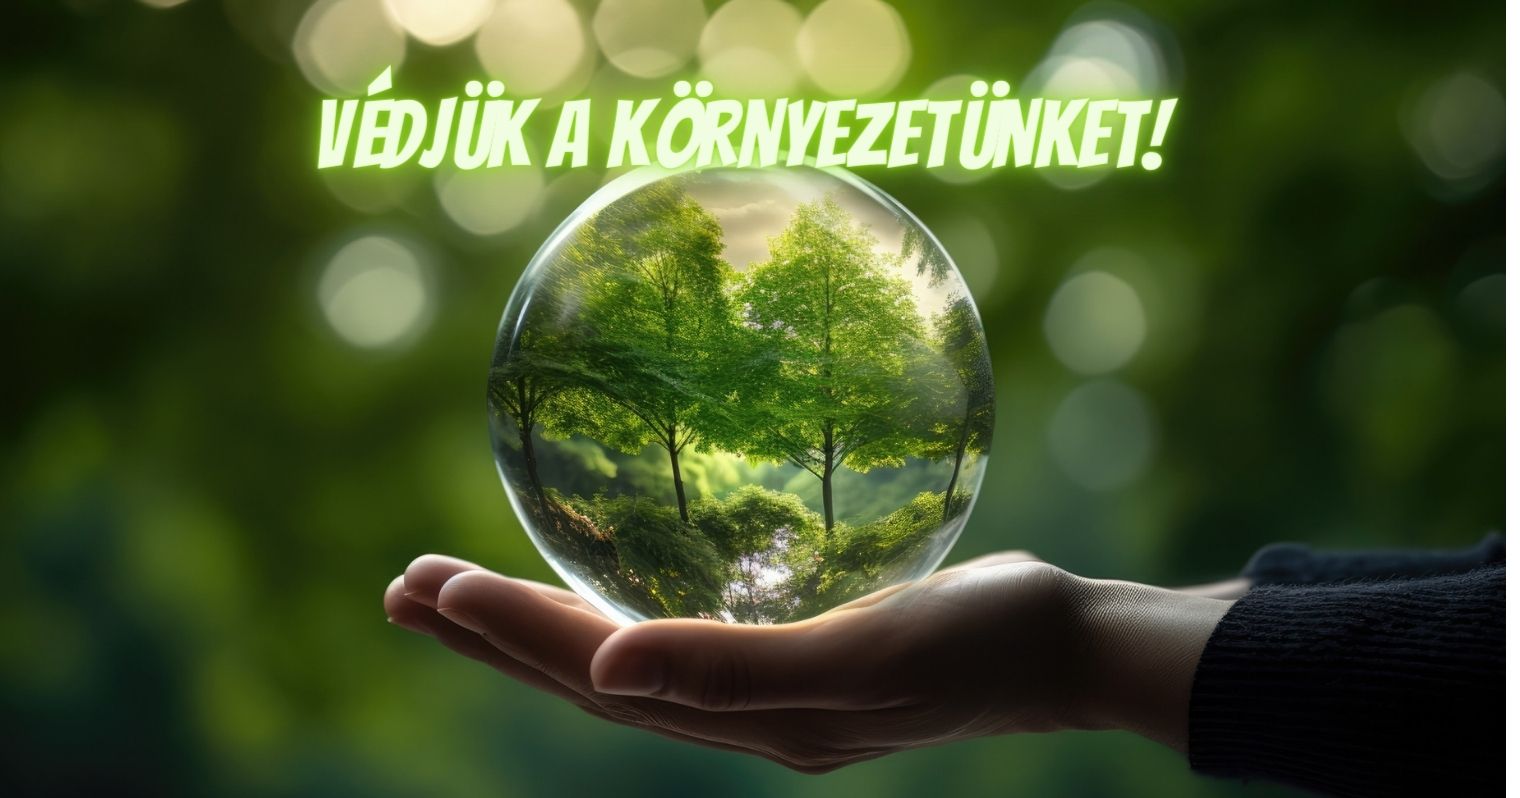 Egy kézen van egy üveggömb, amelyben egy erdő látható, felette egy felirat: "Védjük a környezetünket!".